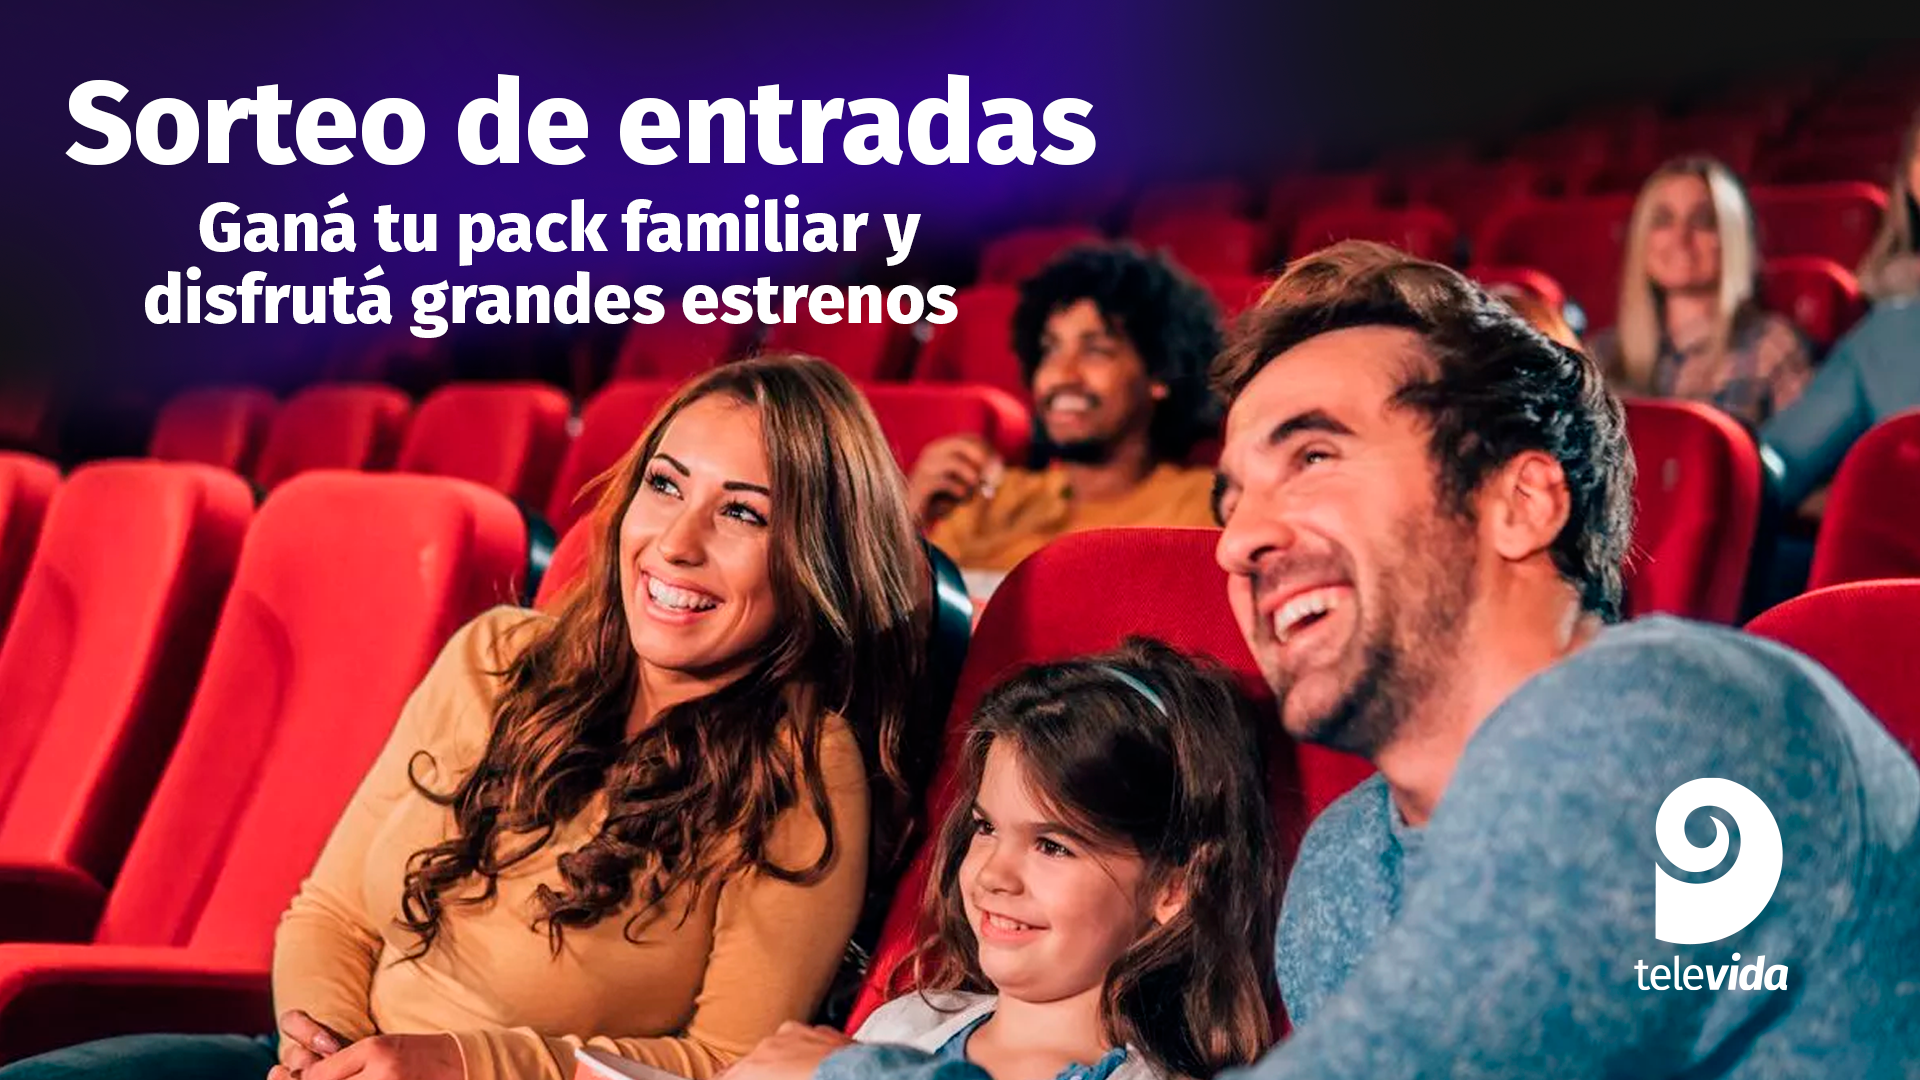 Jugá con #QBT y ganá entradas al cine - Canal 9 Televida Mendoza